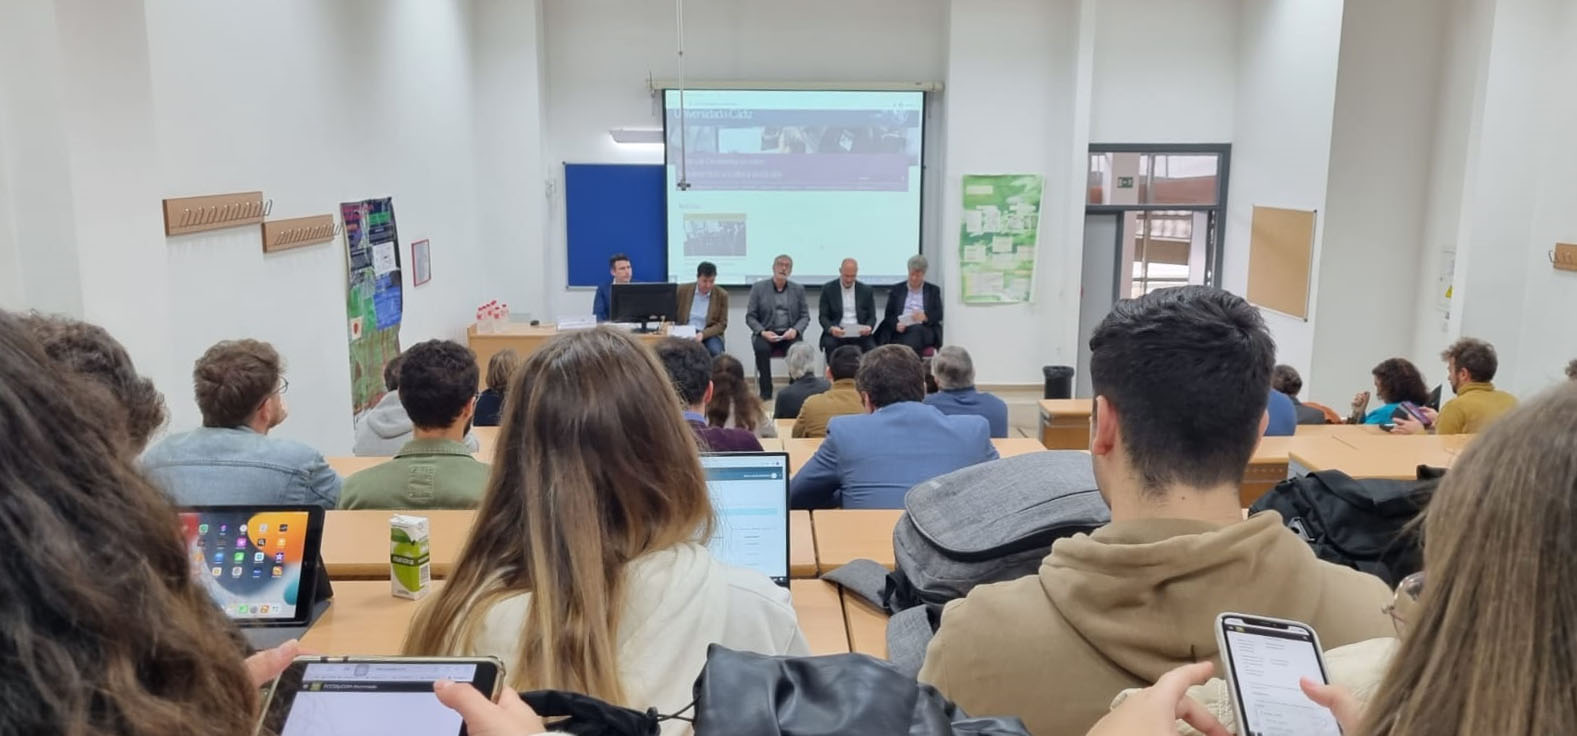 La UCA presenta el Centro de Documentación de Movimientos Sociales y Sindicales en el Campus de Jerez